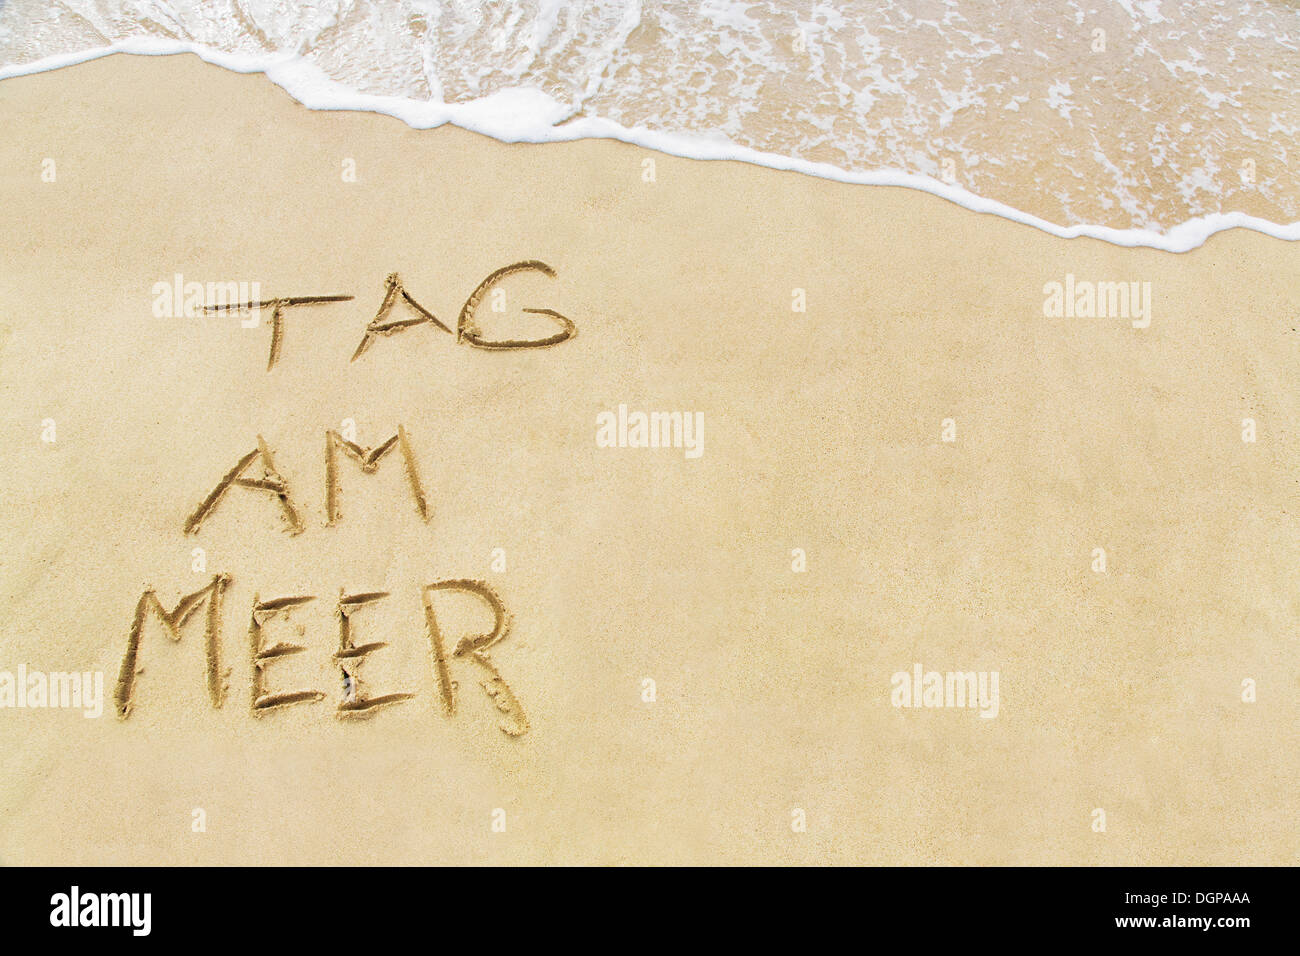 Tag am Meer, Tedesco per giornata di mare, scritto di sabbia su una spiaggia, Lanzarote, Isole Canarie, Spagna, Europa Foto Stock